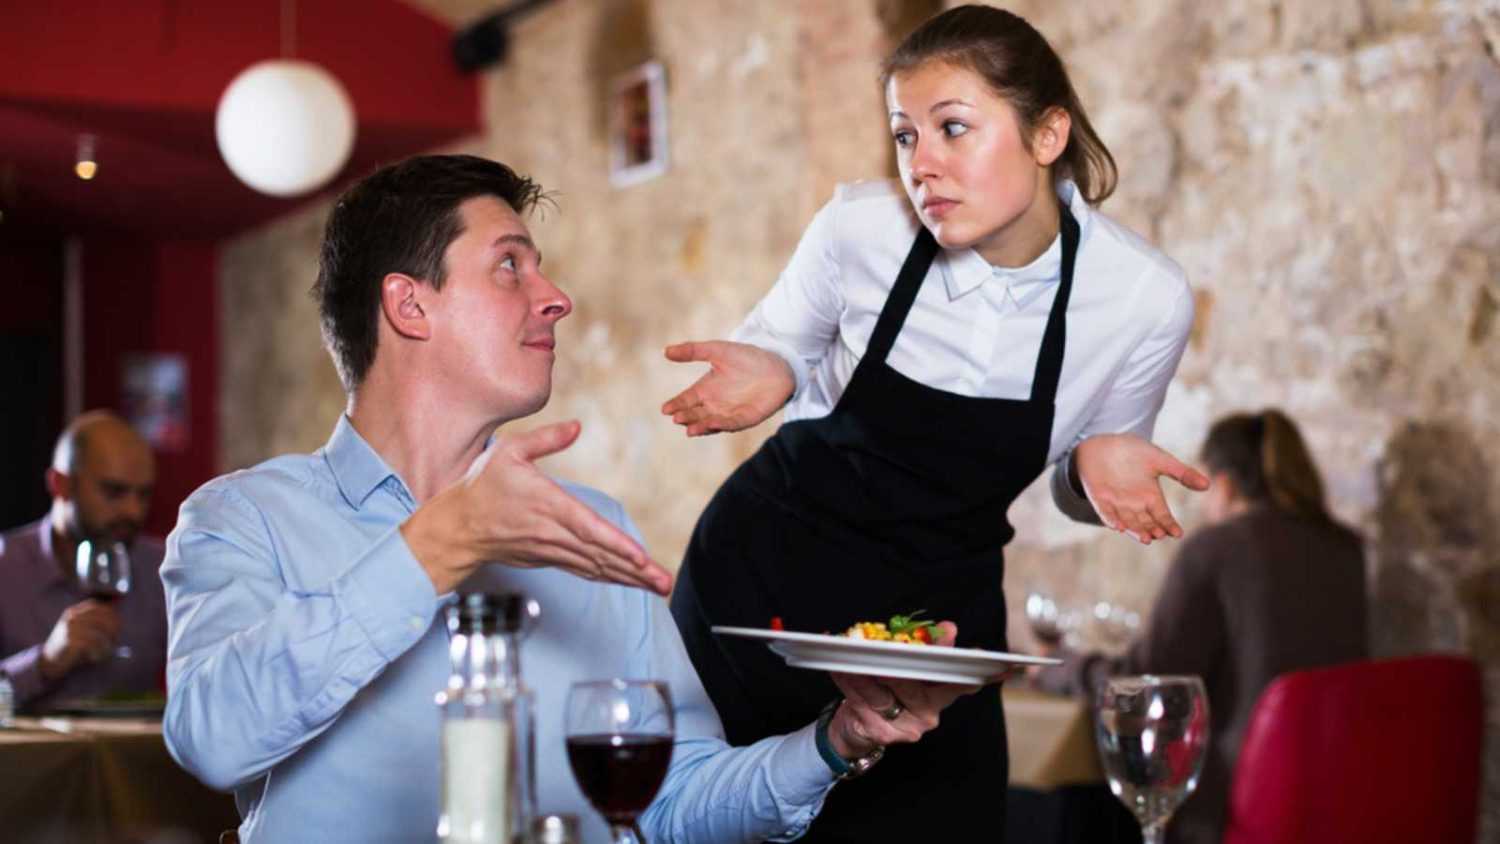 Man talking to waitress at restaurant